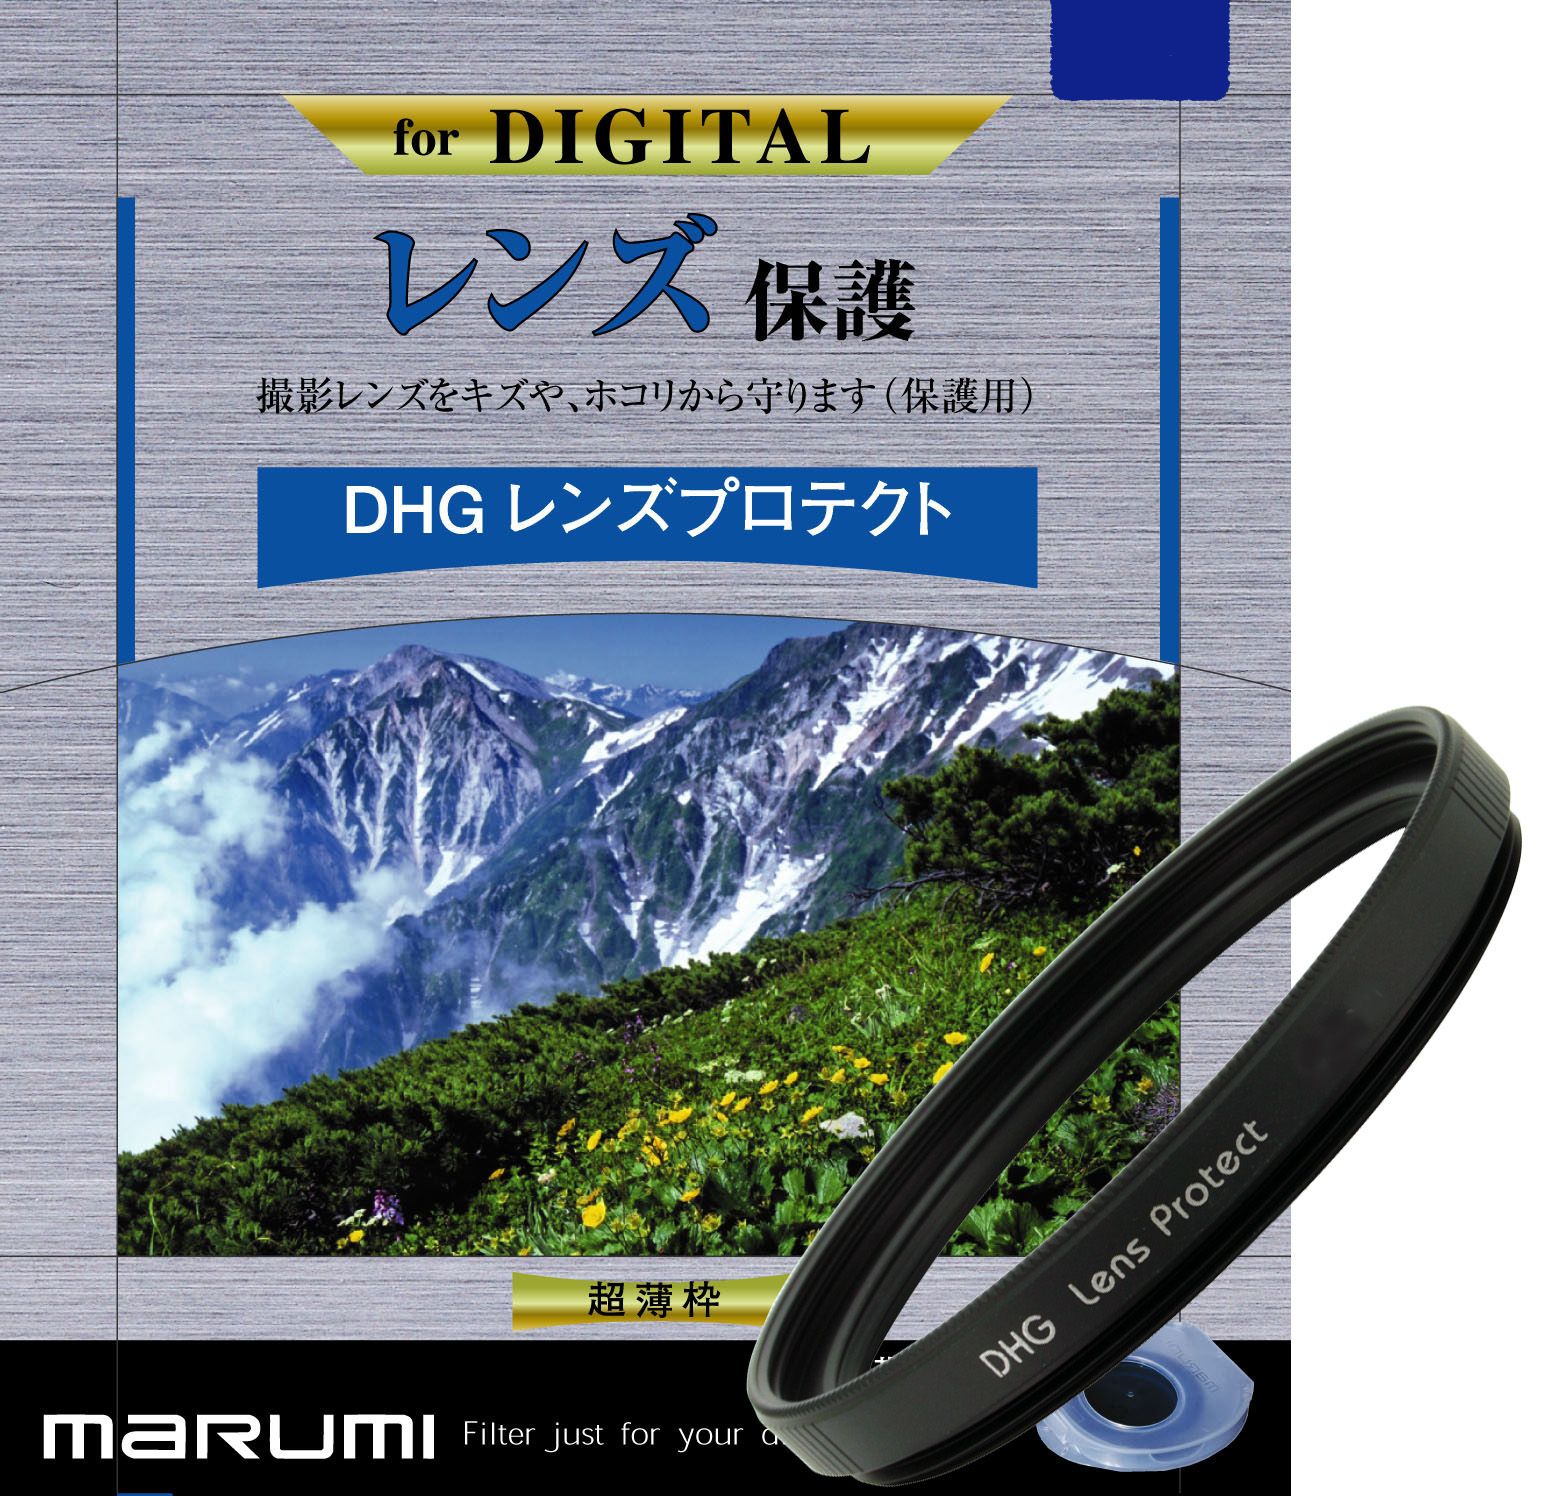 マルミ  DHG レンズプロテクト 55mm [プロテクター] MARUMI